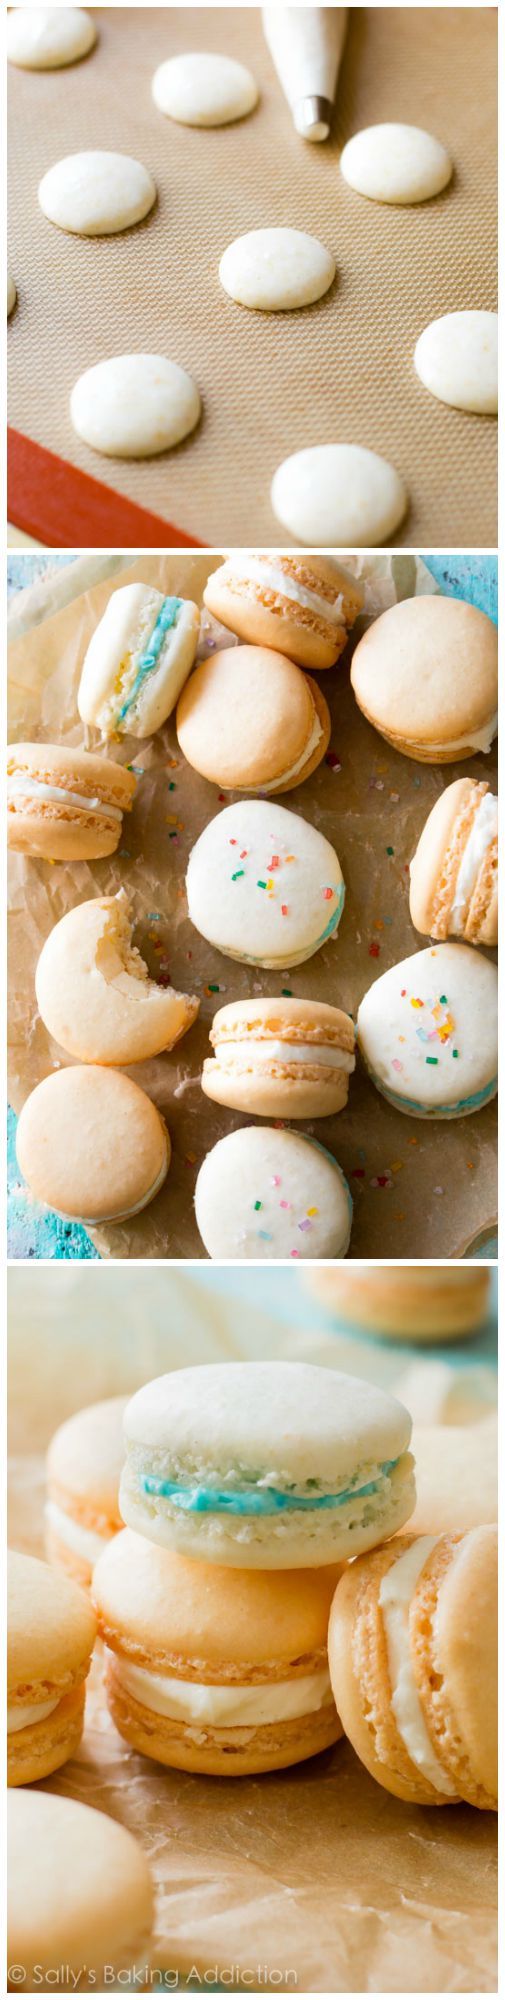 Vous êtes-vous déjà demandé comment faire des biscuits au macaron français? Voici comment procéder!